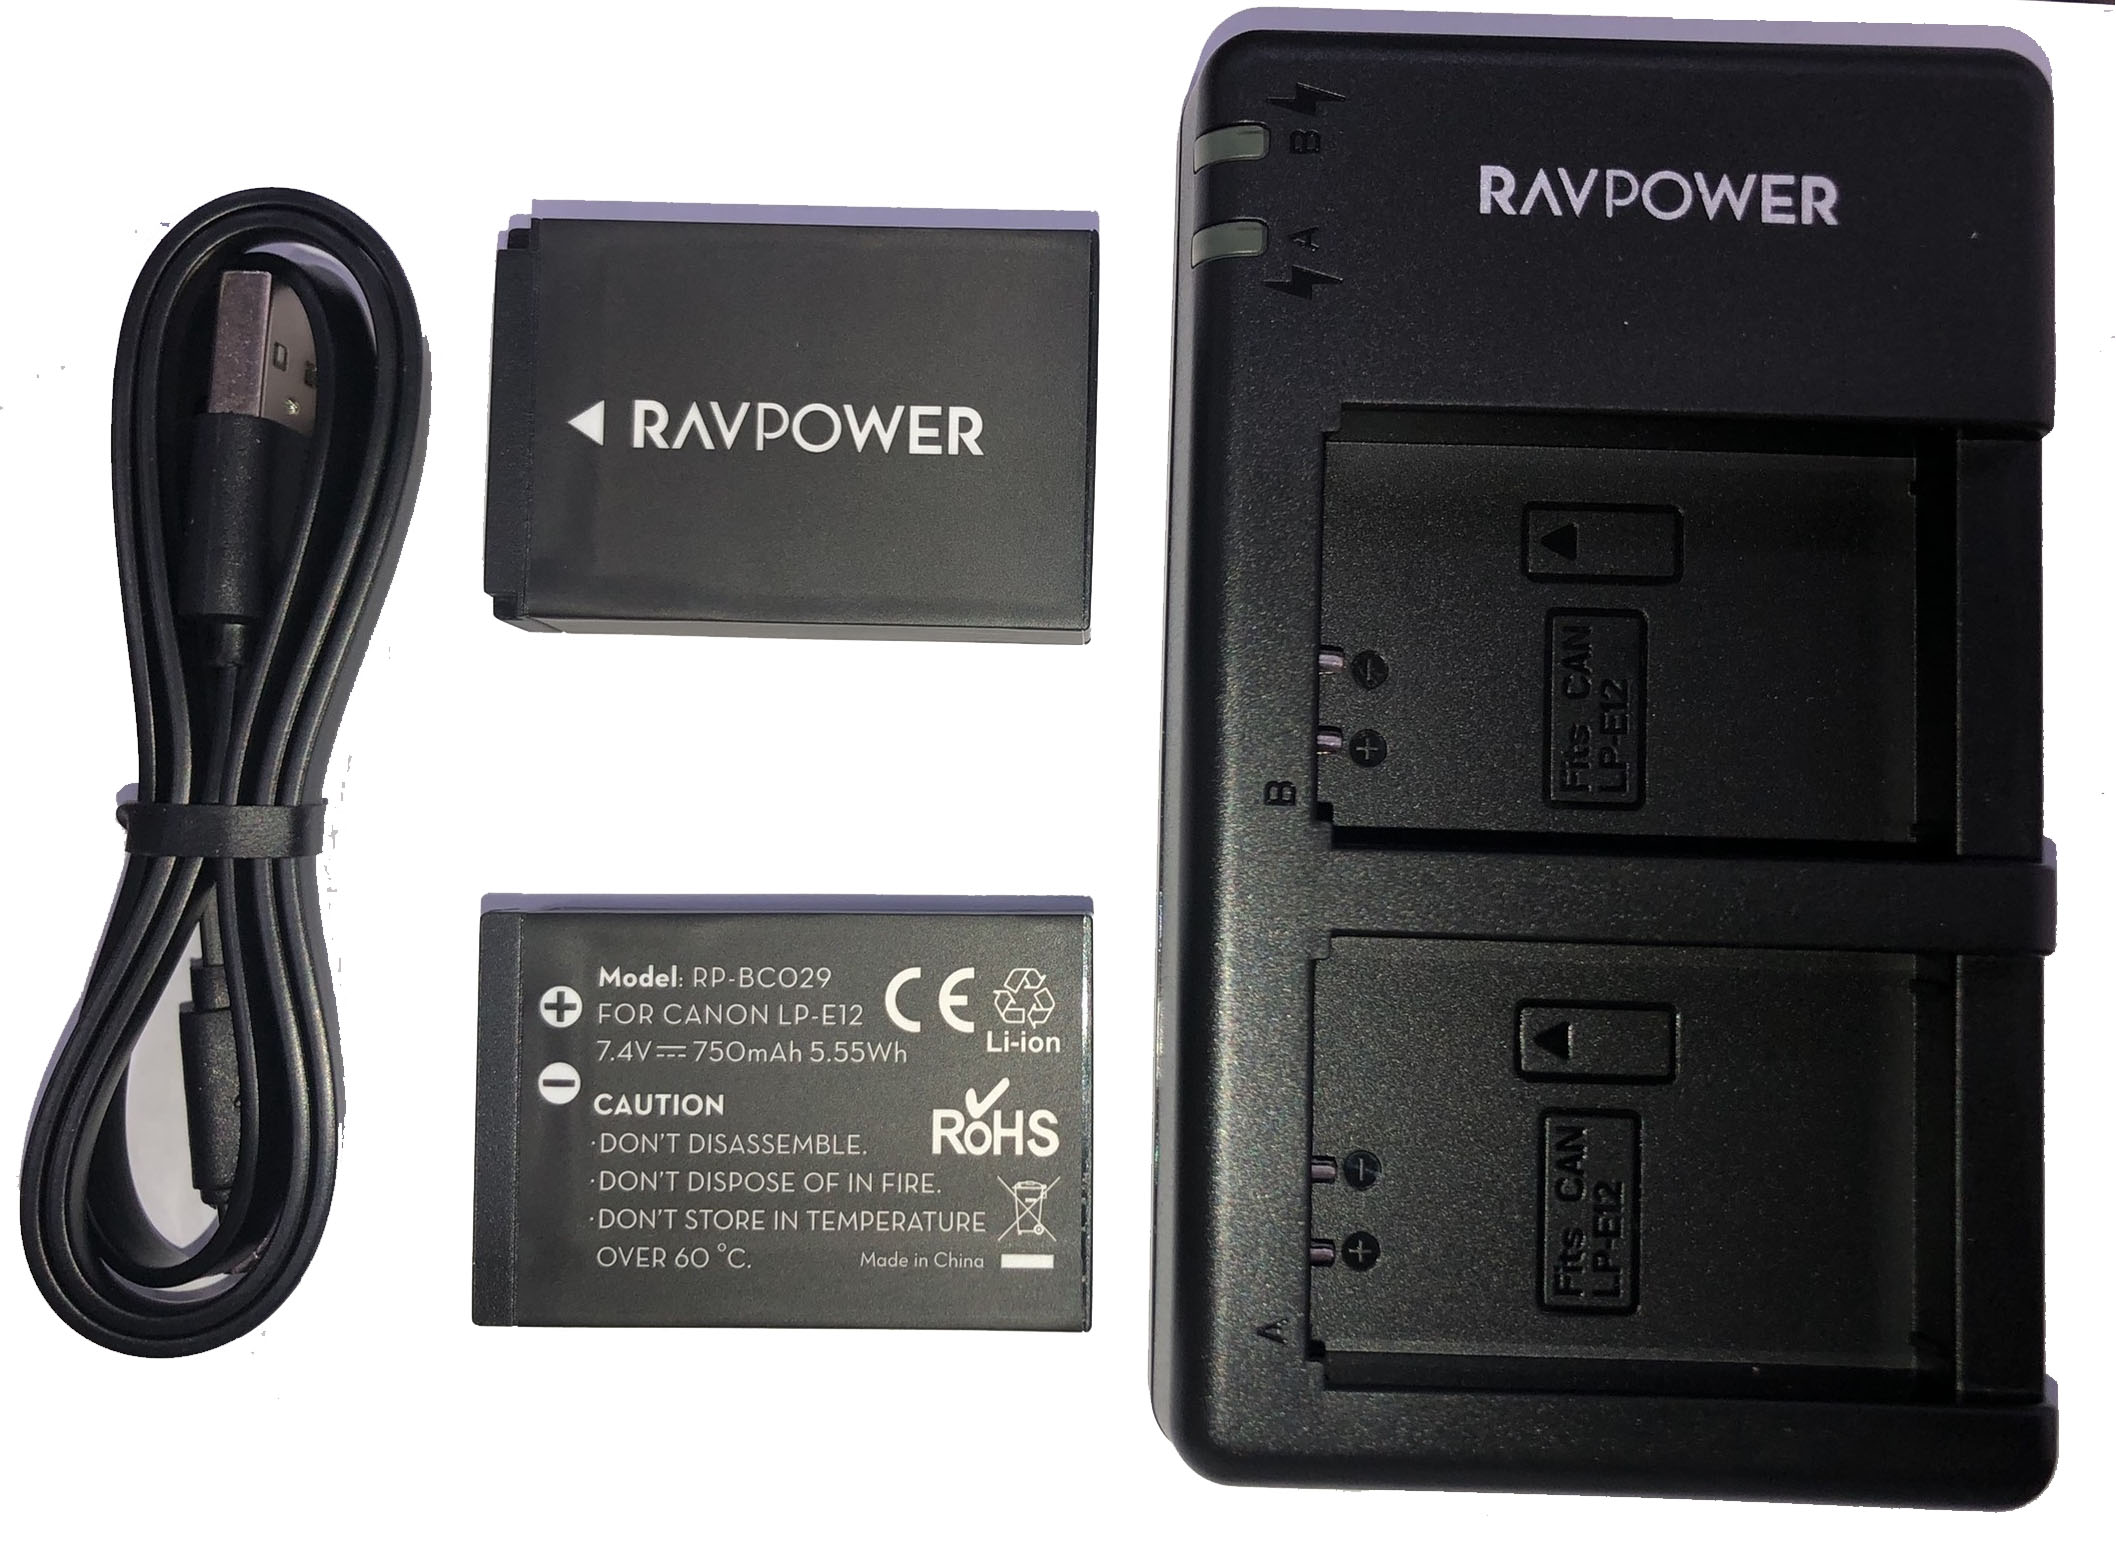 Hình ảnh Bộ 2 Pin + Sạc Đôi RAVPower RP-BC029 Canon LP-E12 Cho Canon EOS M10, EOS M6, EOS M50, EOS M100, EOS M200, EOS 100D, EOS 200D, EOS 250D (Hàng Chính Hãng)